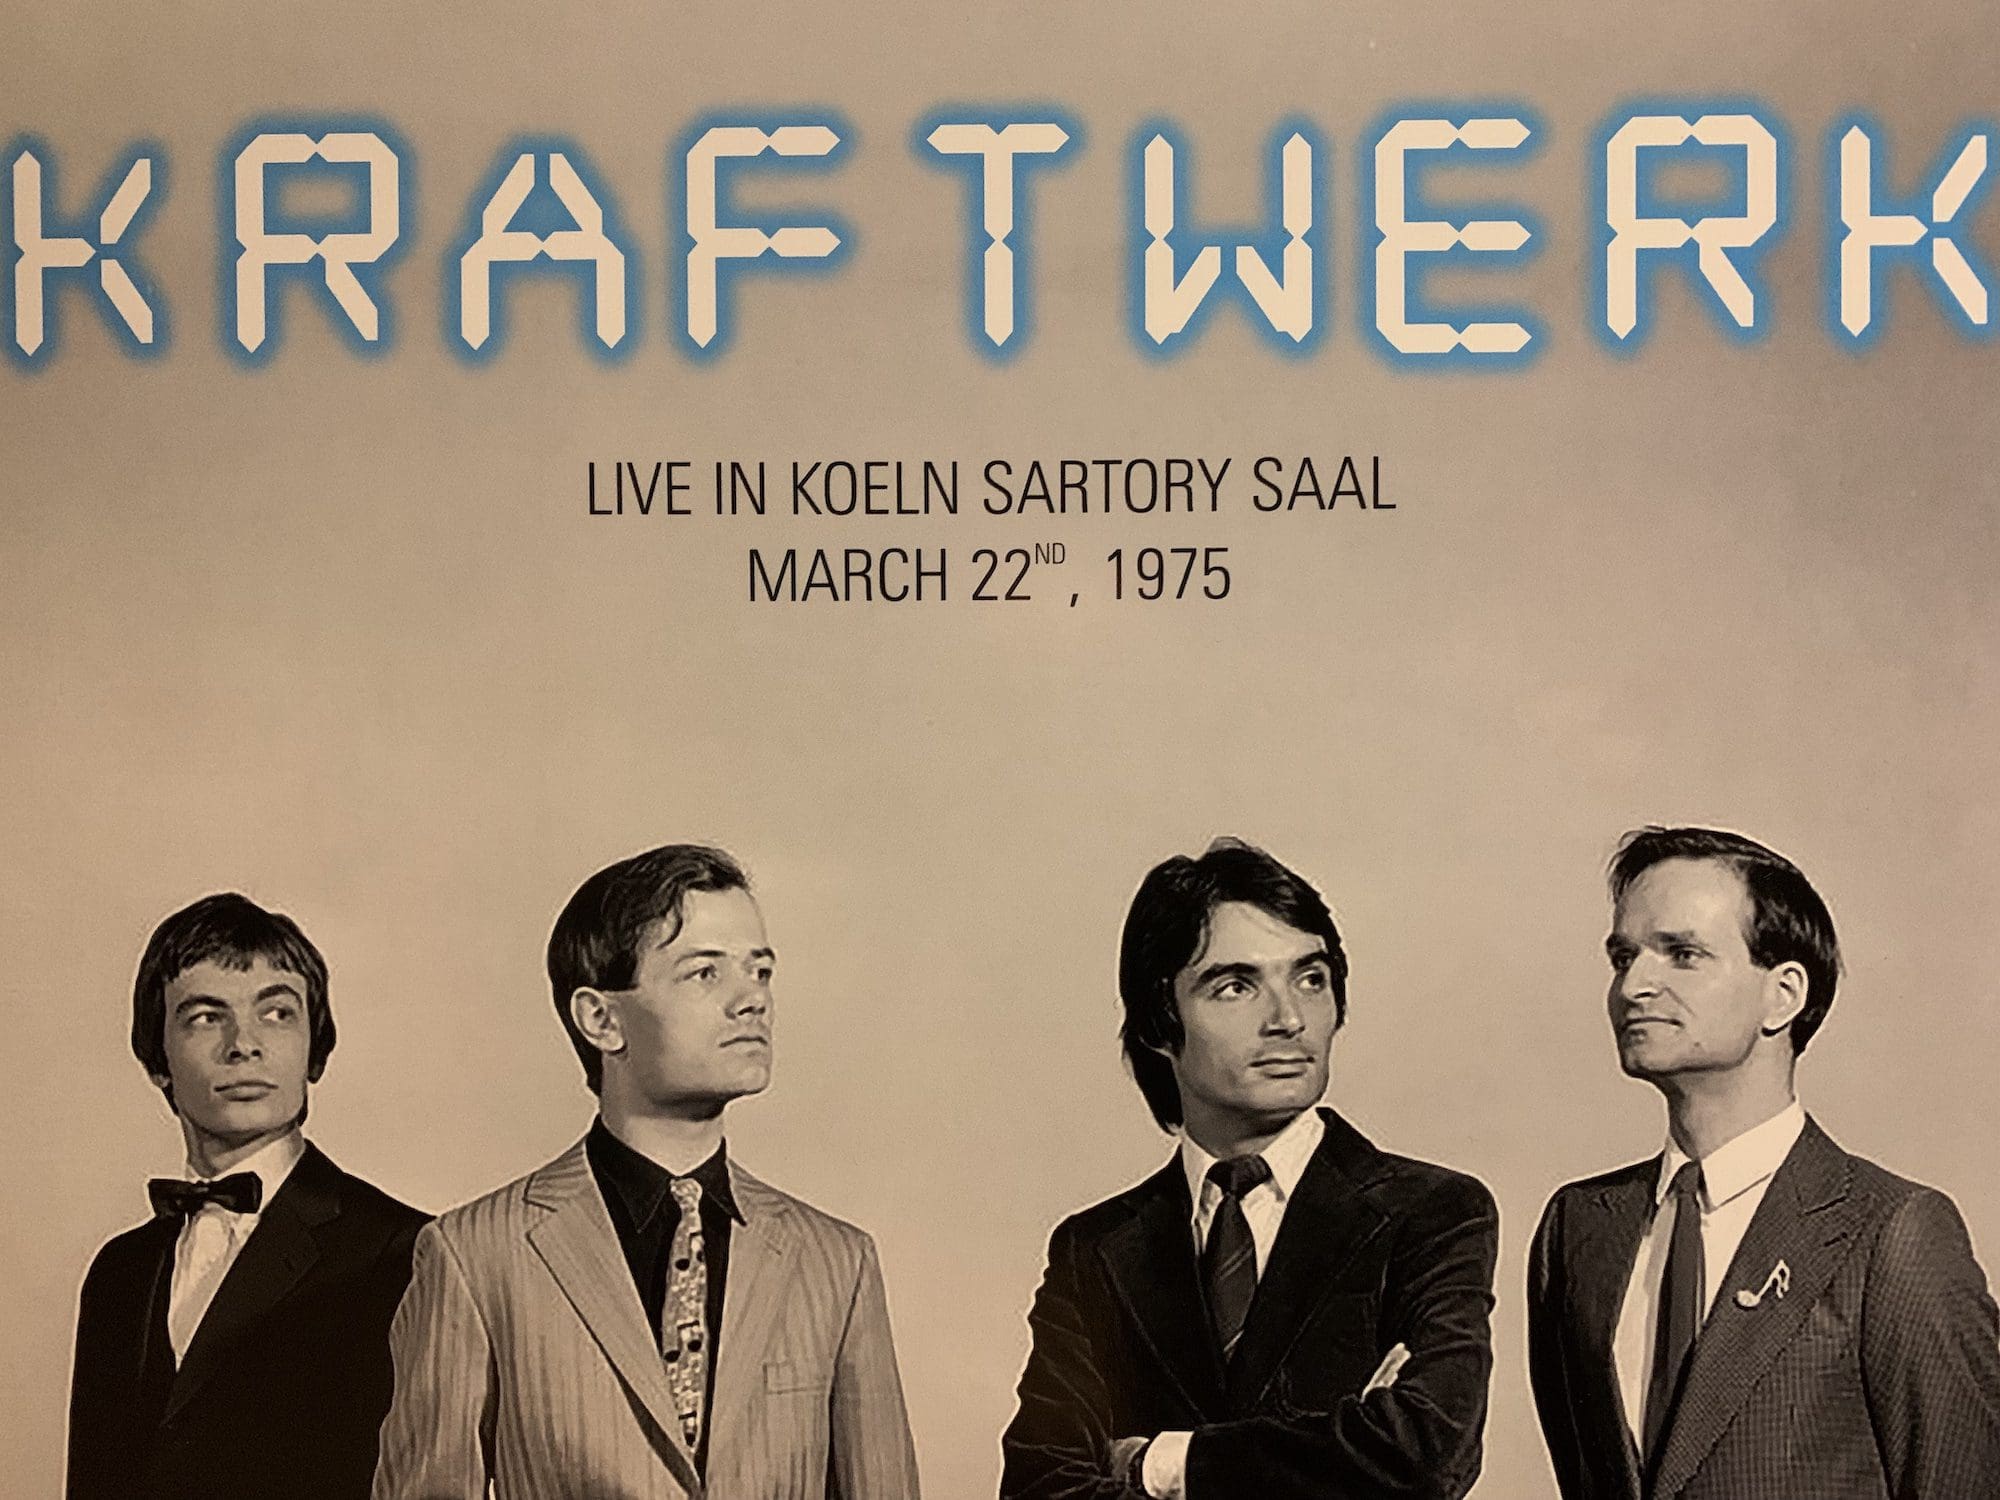 Kraftwerk 唱片封面